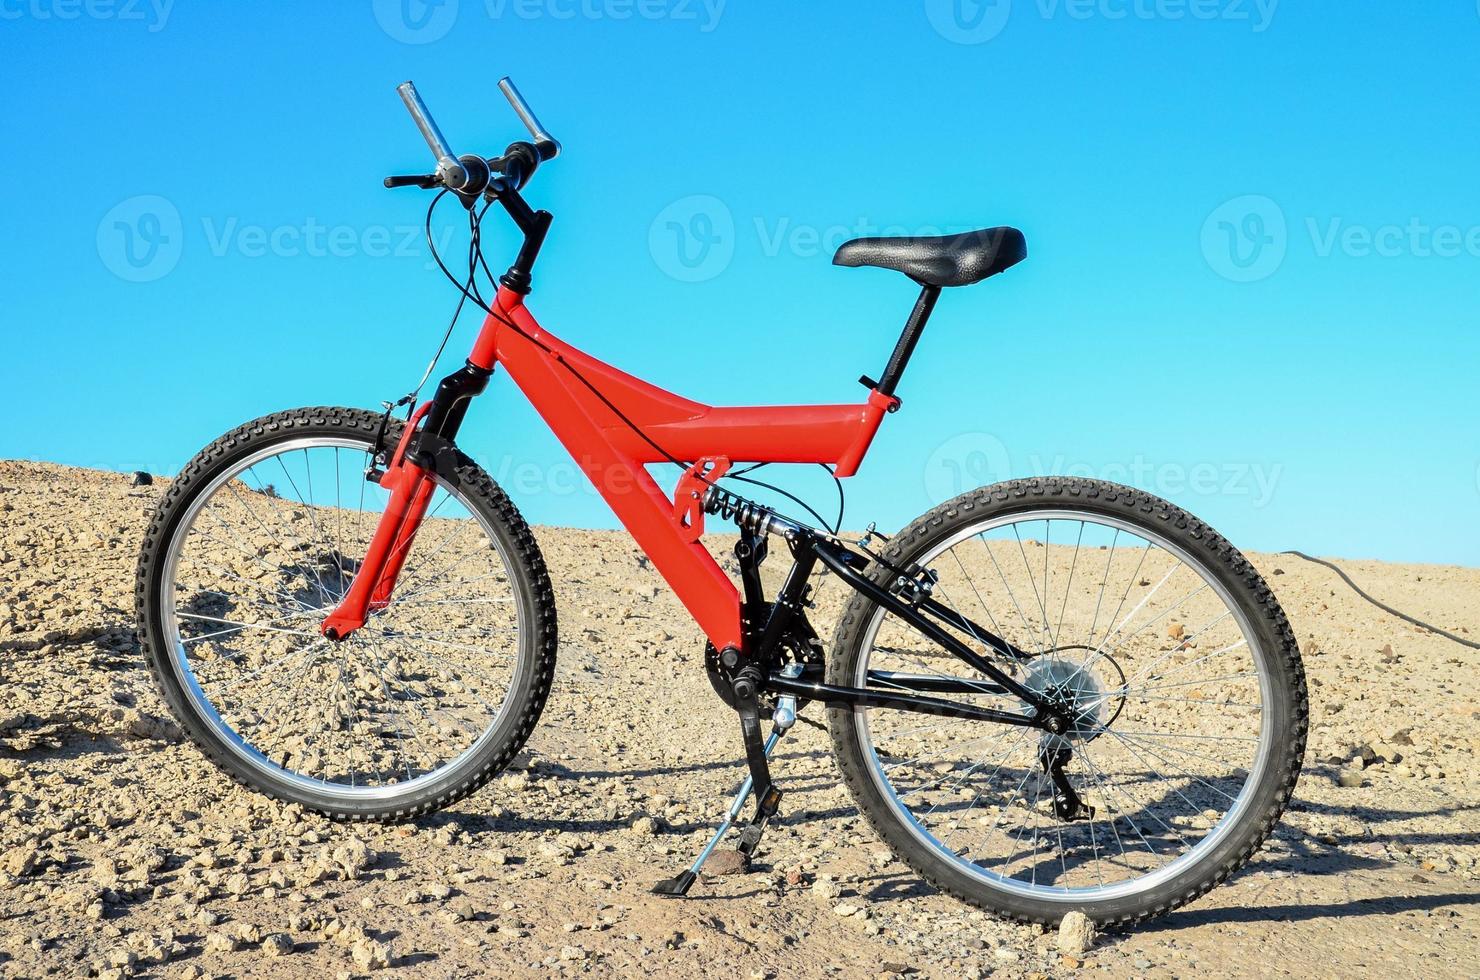 rosso bicicletta nel il deserto foto